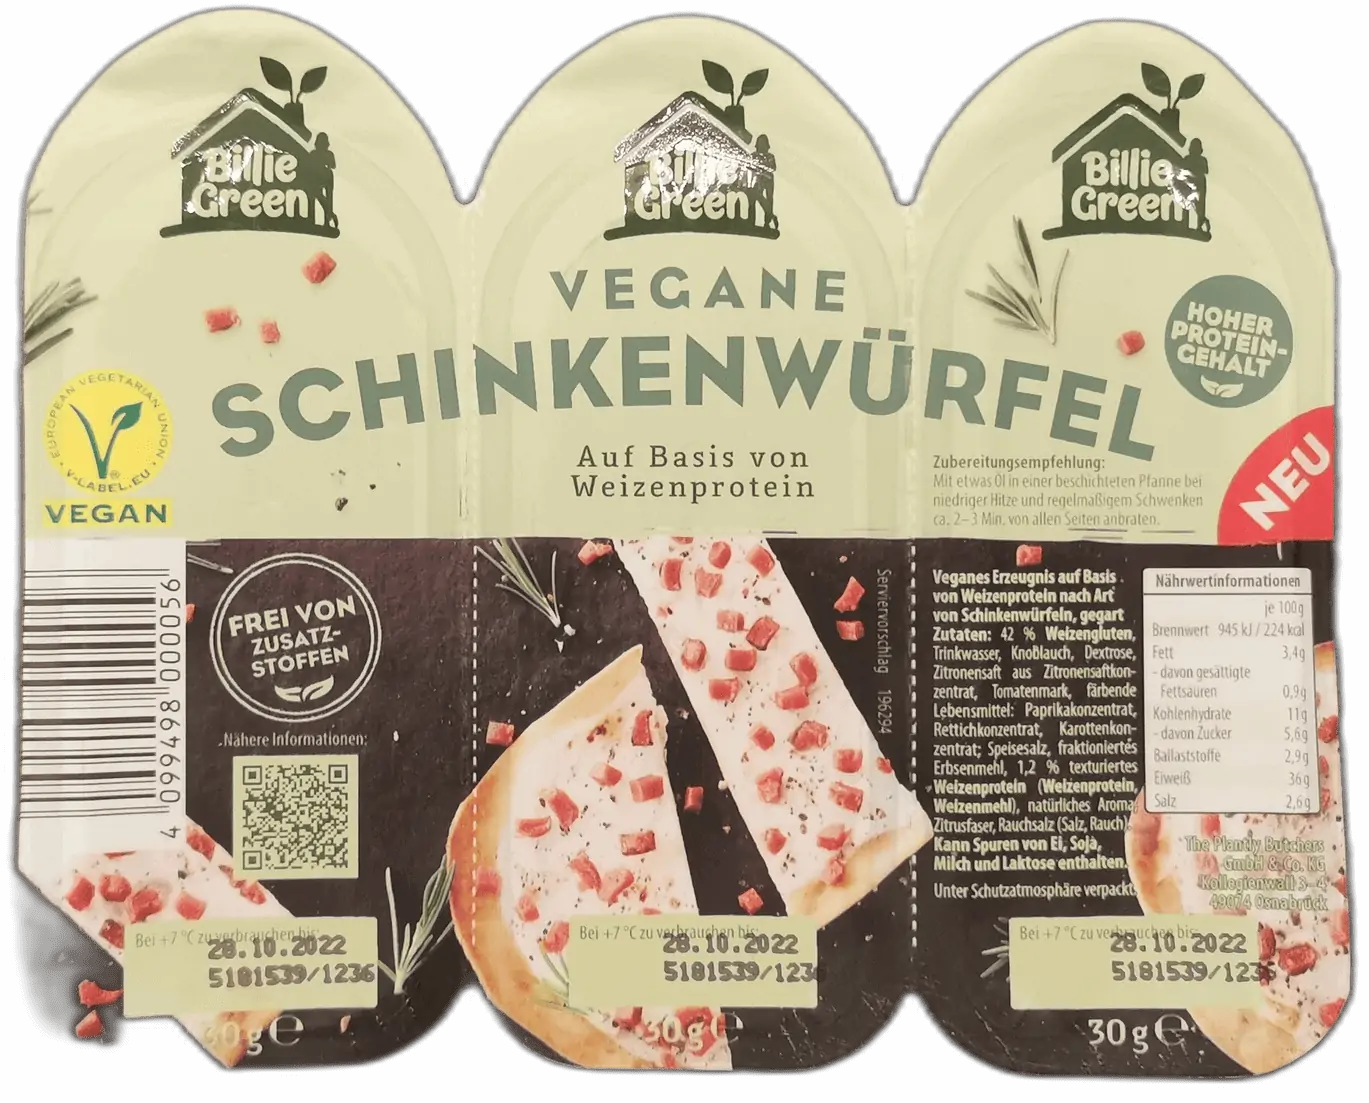 Billie Green Vegane Schinkenwuerfel freigestellt | Fleischersatz-Produkte.de